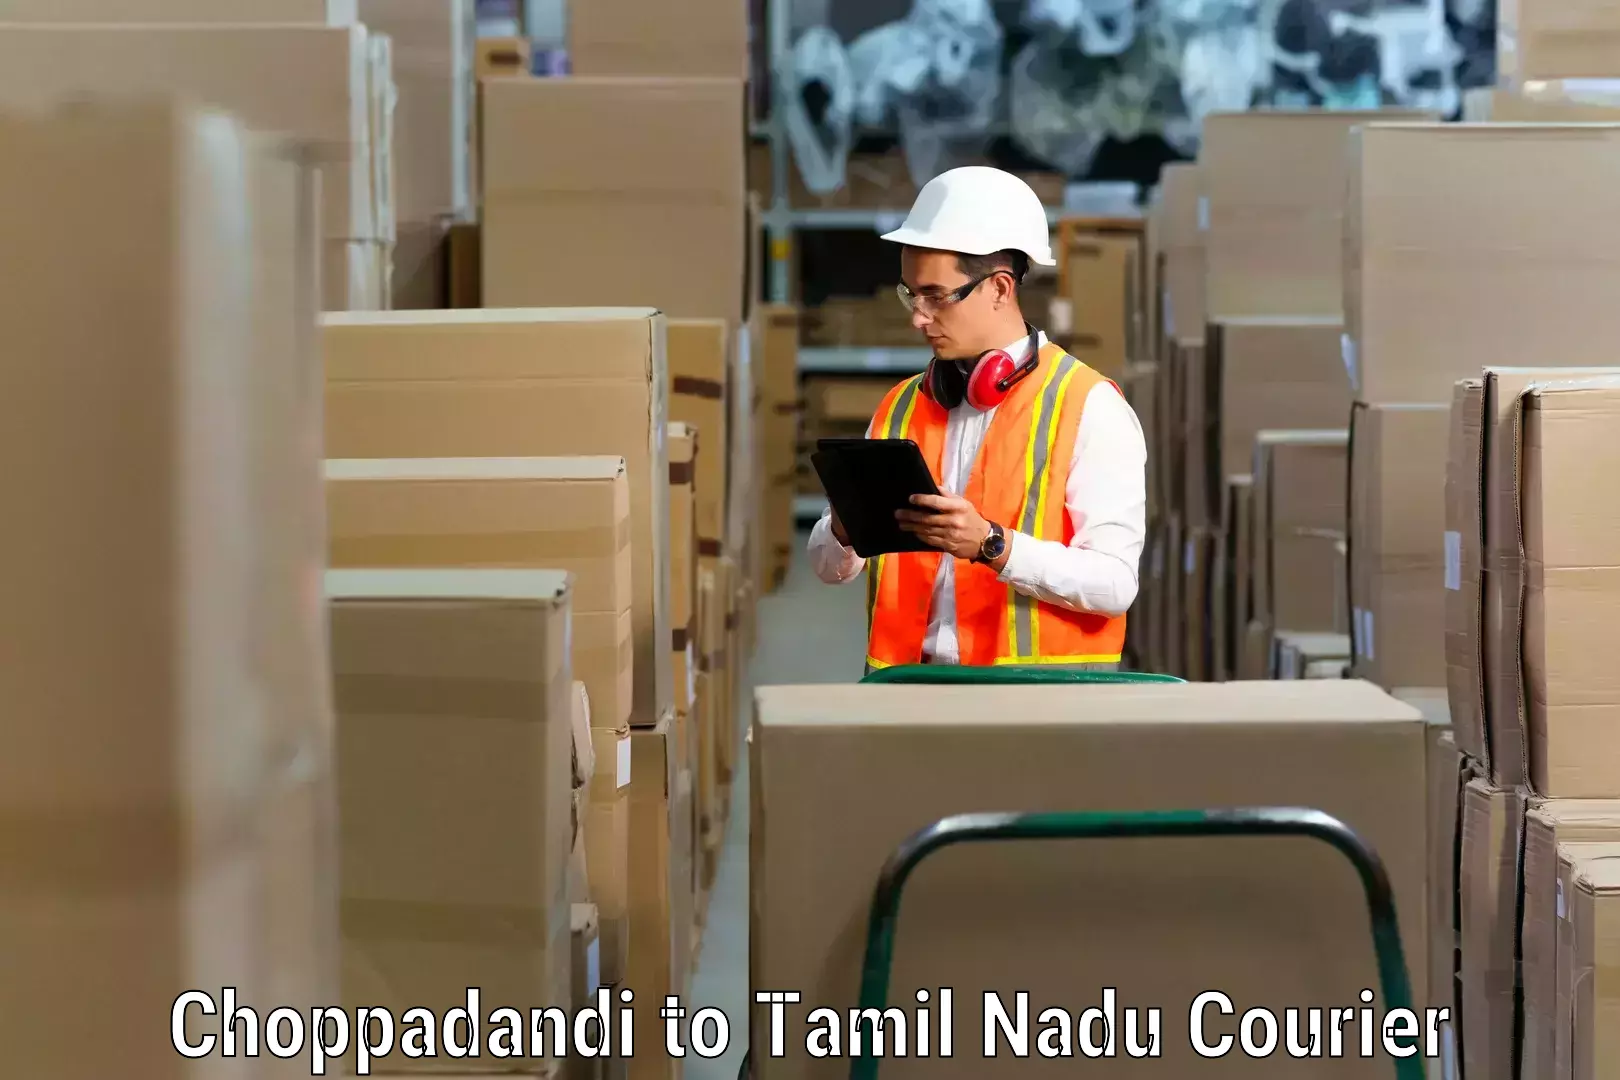 Furniture transport specialists Choppadandi to Tamil Nadu